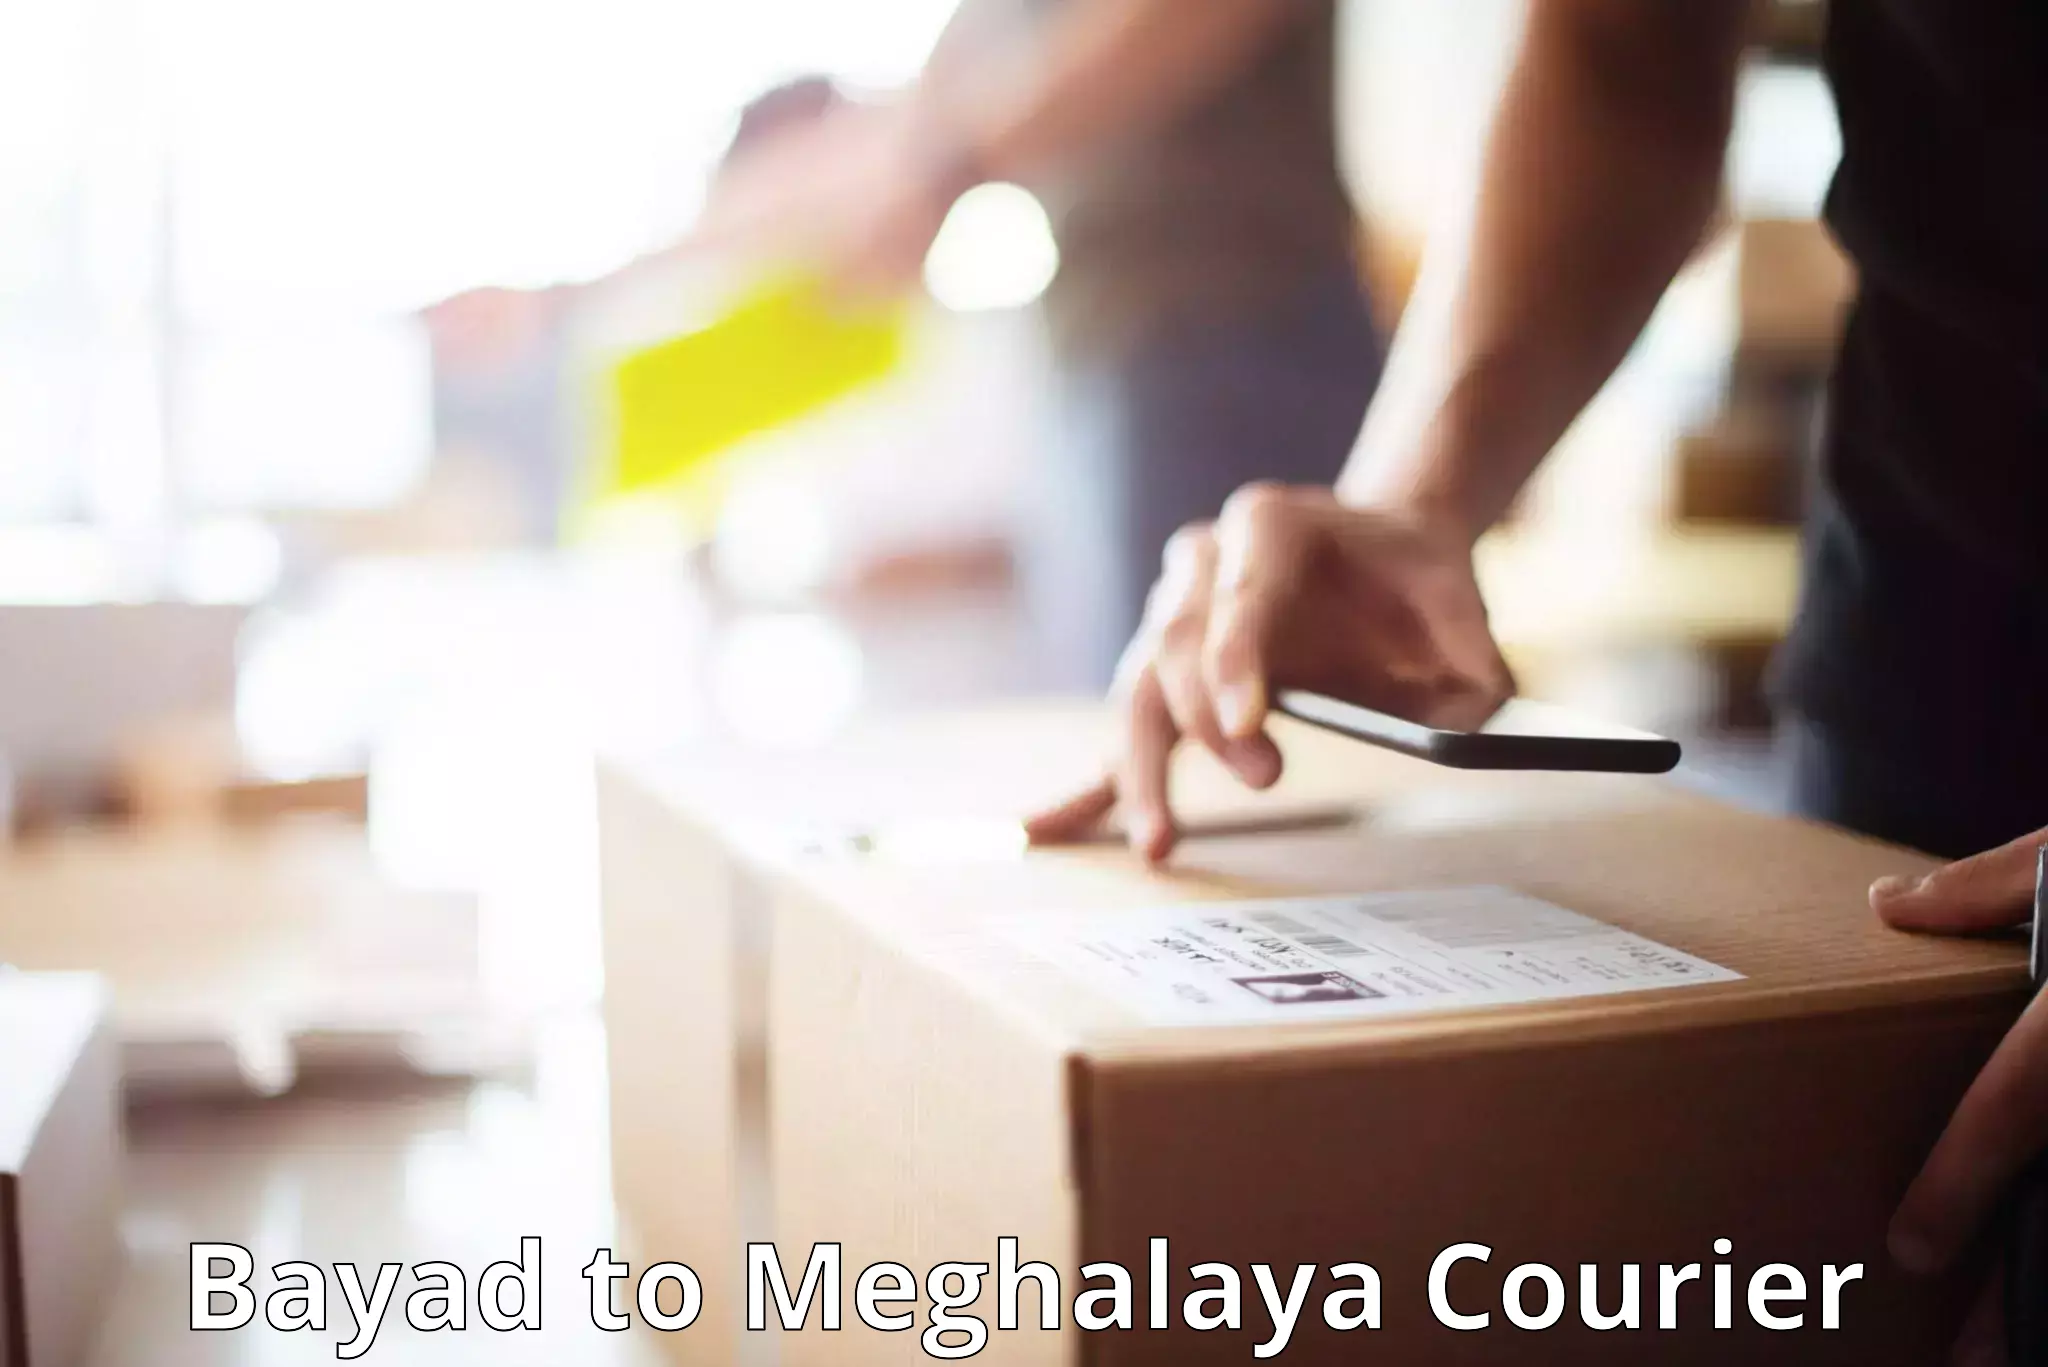 Luggage delivery app Bayad to Meghalaya